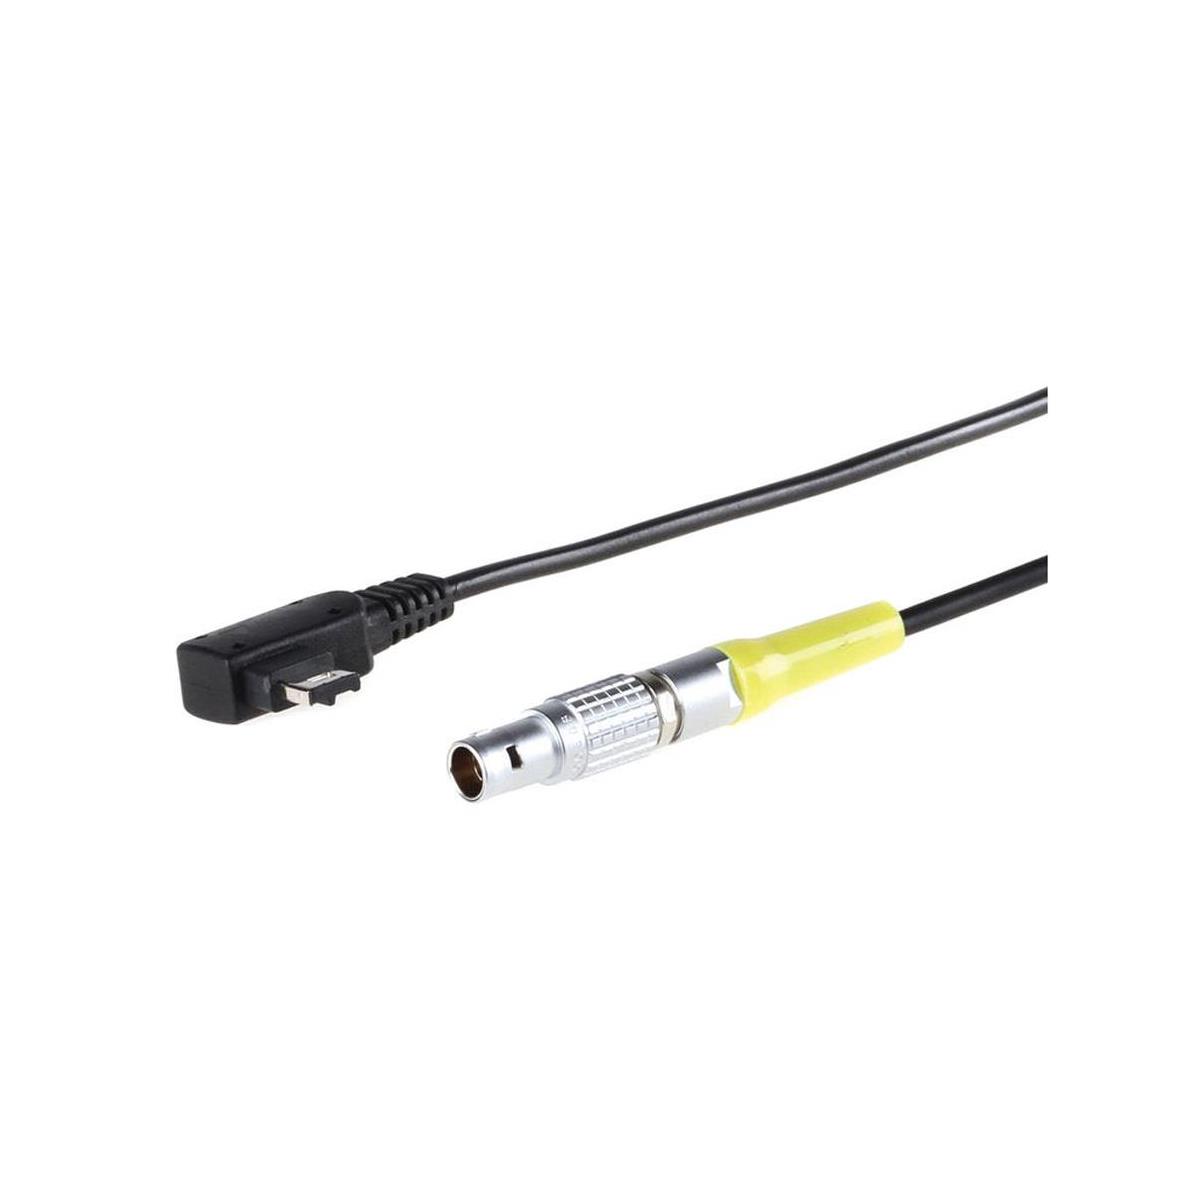 4-контактный кабель питания Movcam Lemo для видеокамеры Sony FS700 #MOV-101-1712